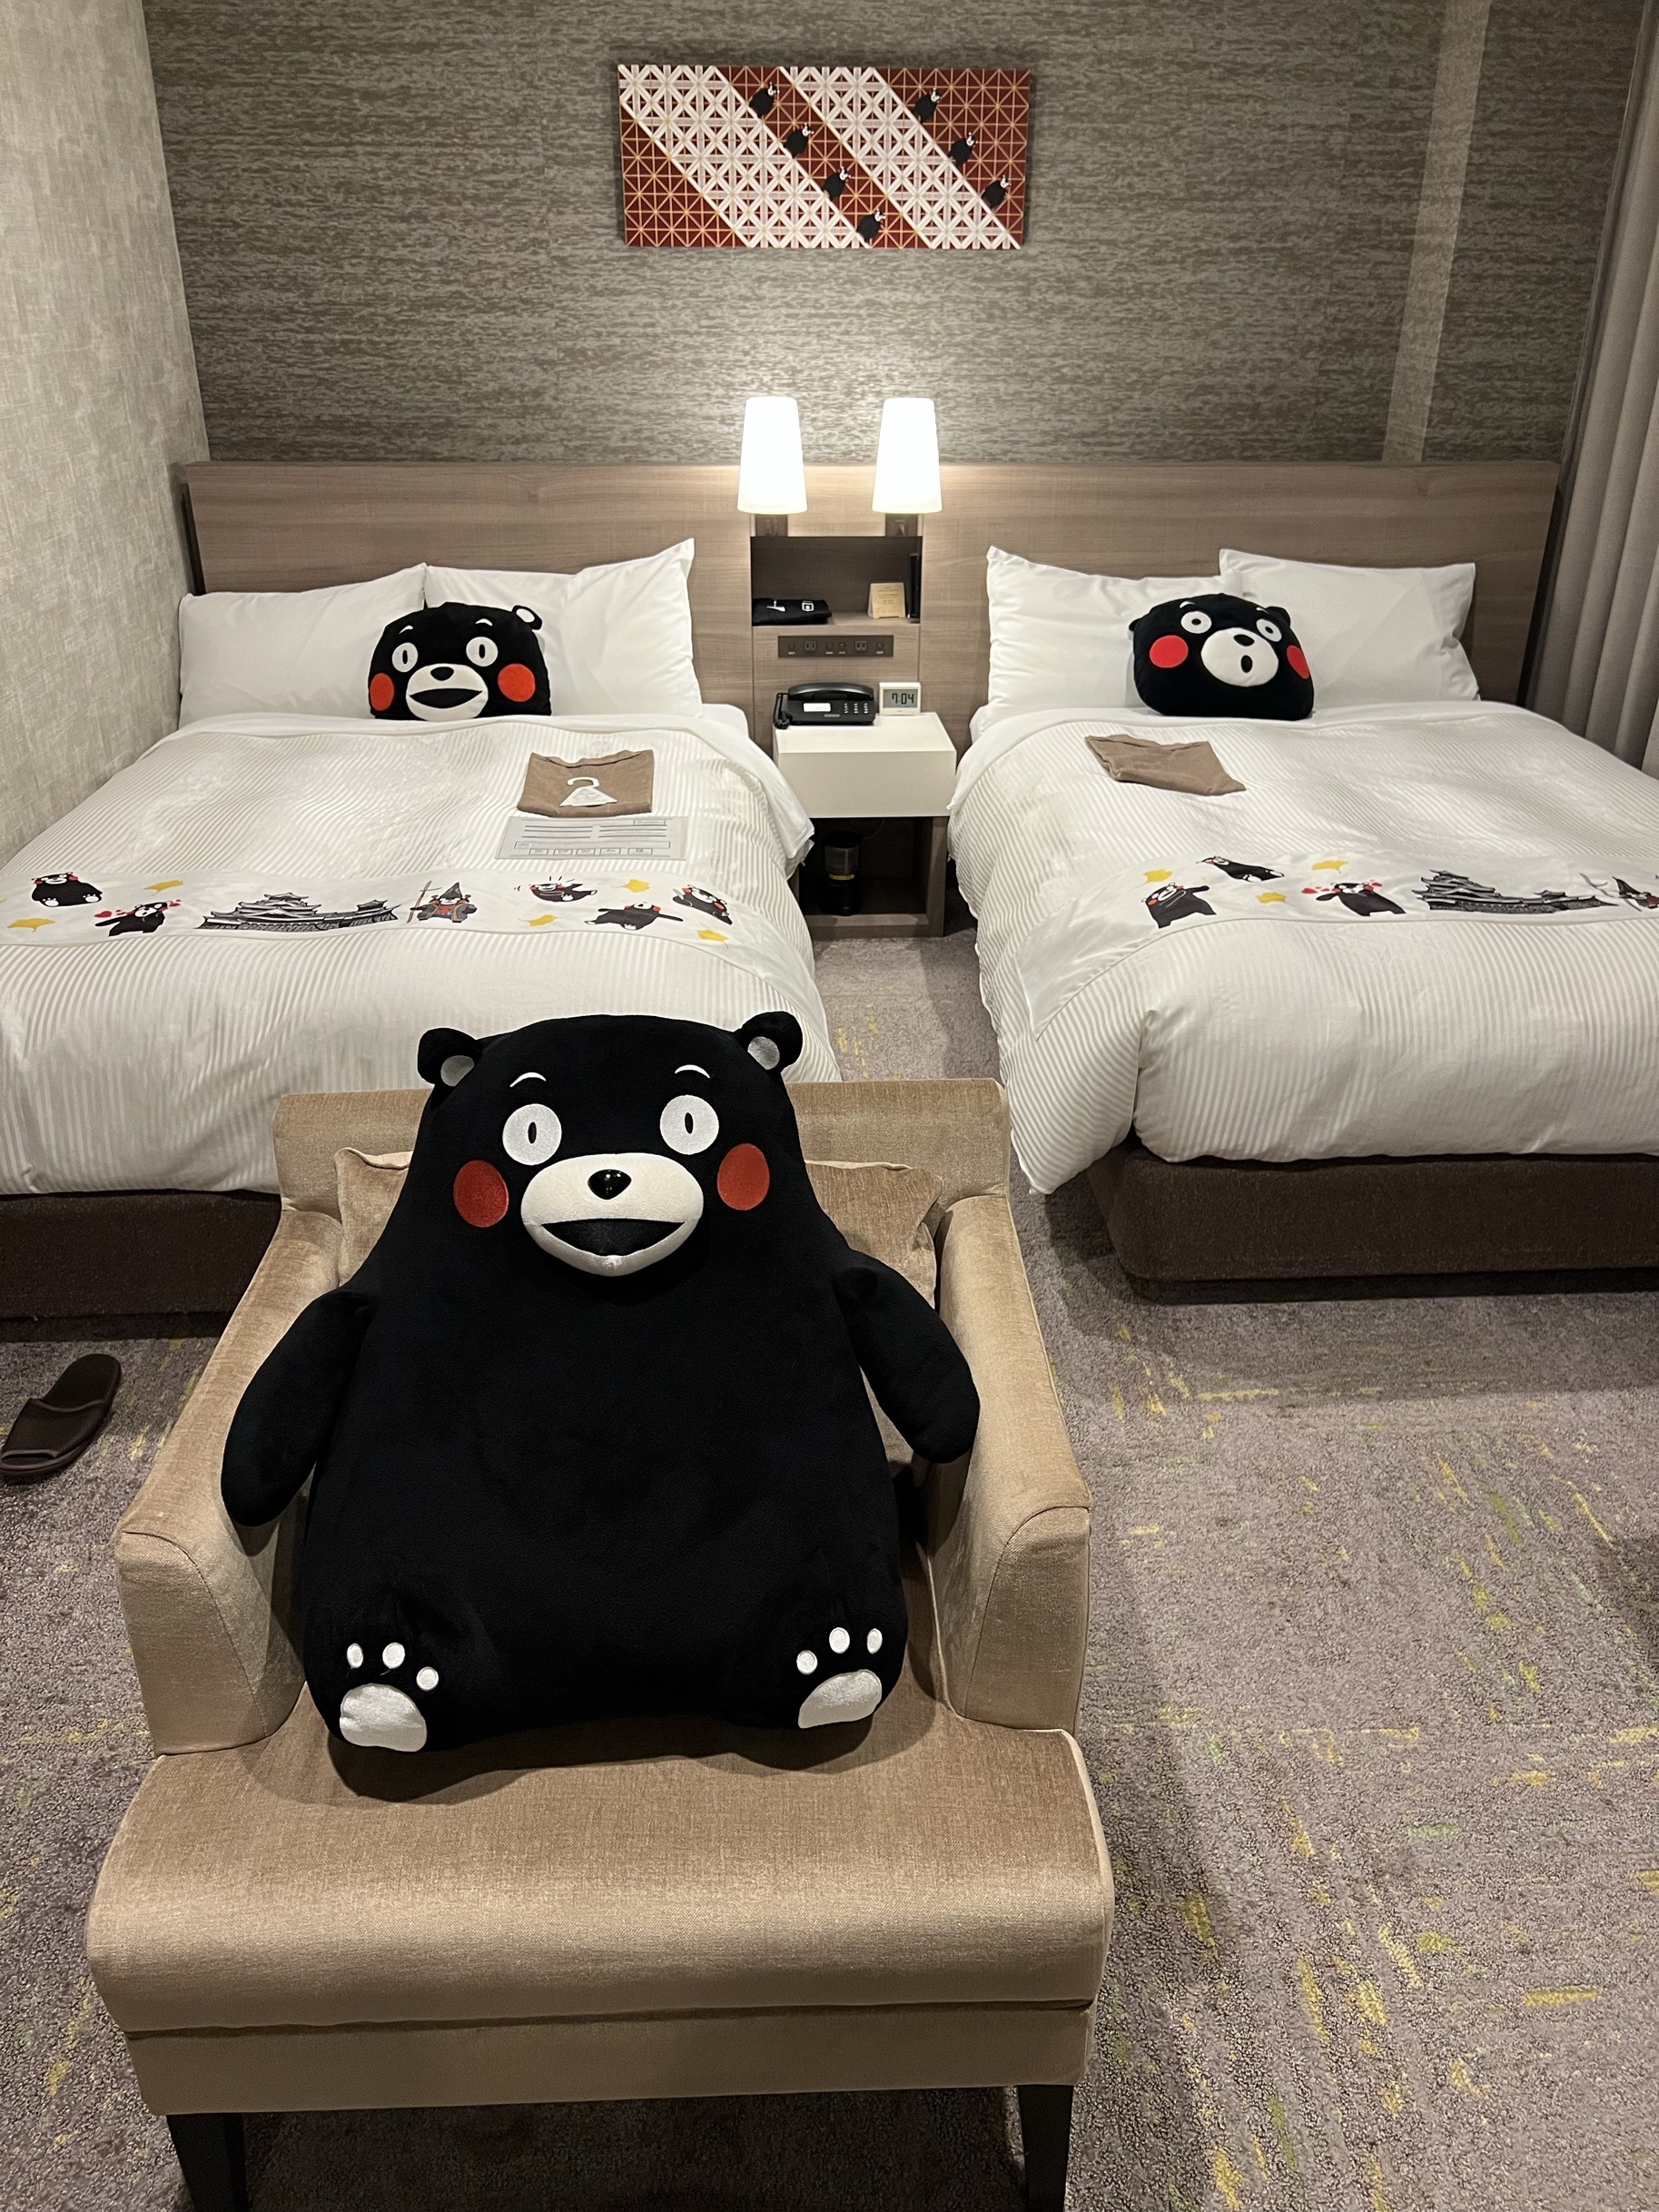 酒店出行交通挺方便的，有非常可爱的熊本熊装饰的房间，早餐种类挺多的，附近就有吃米其林炸猪排的胜烈亭店